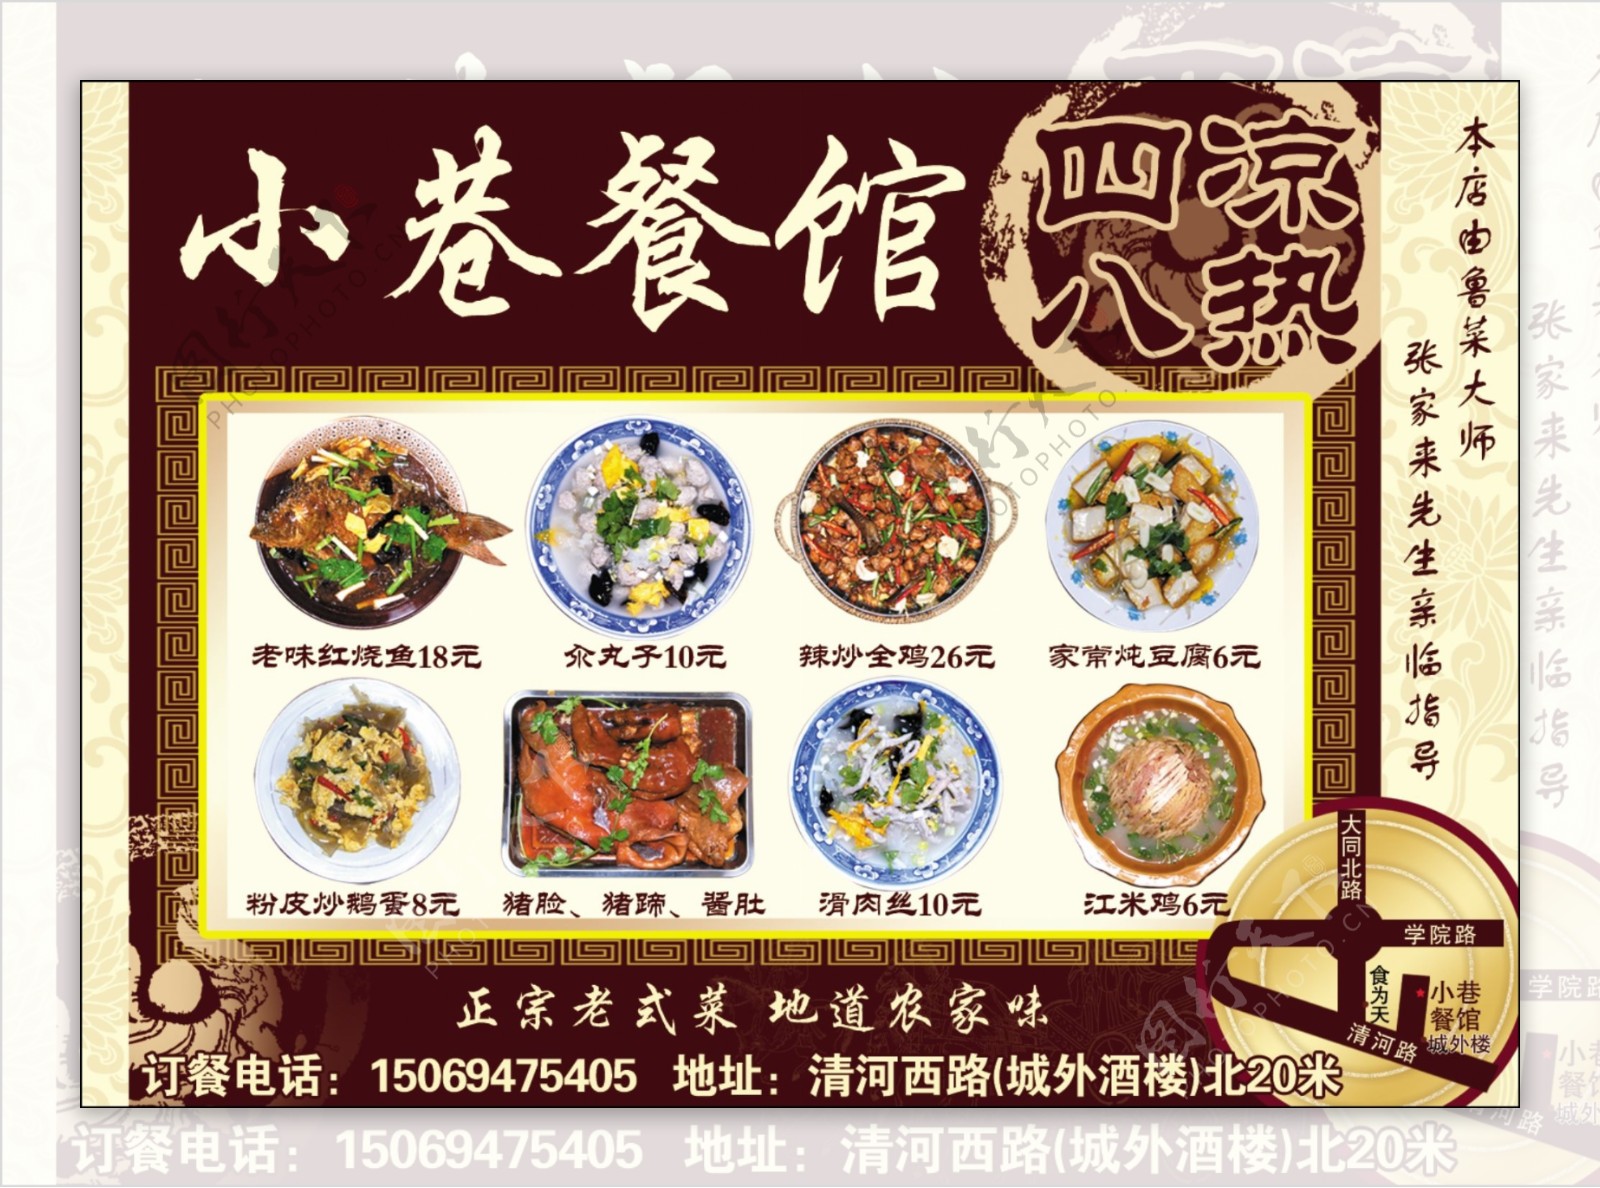 中国风菜单模板PSD分层素材